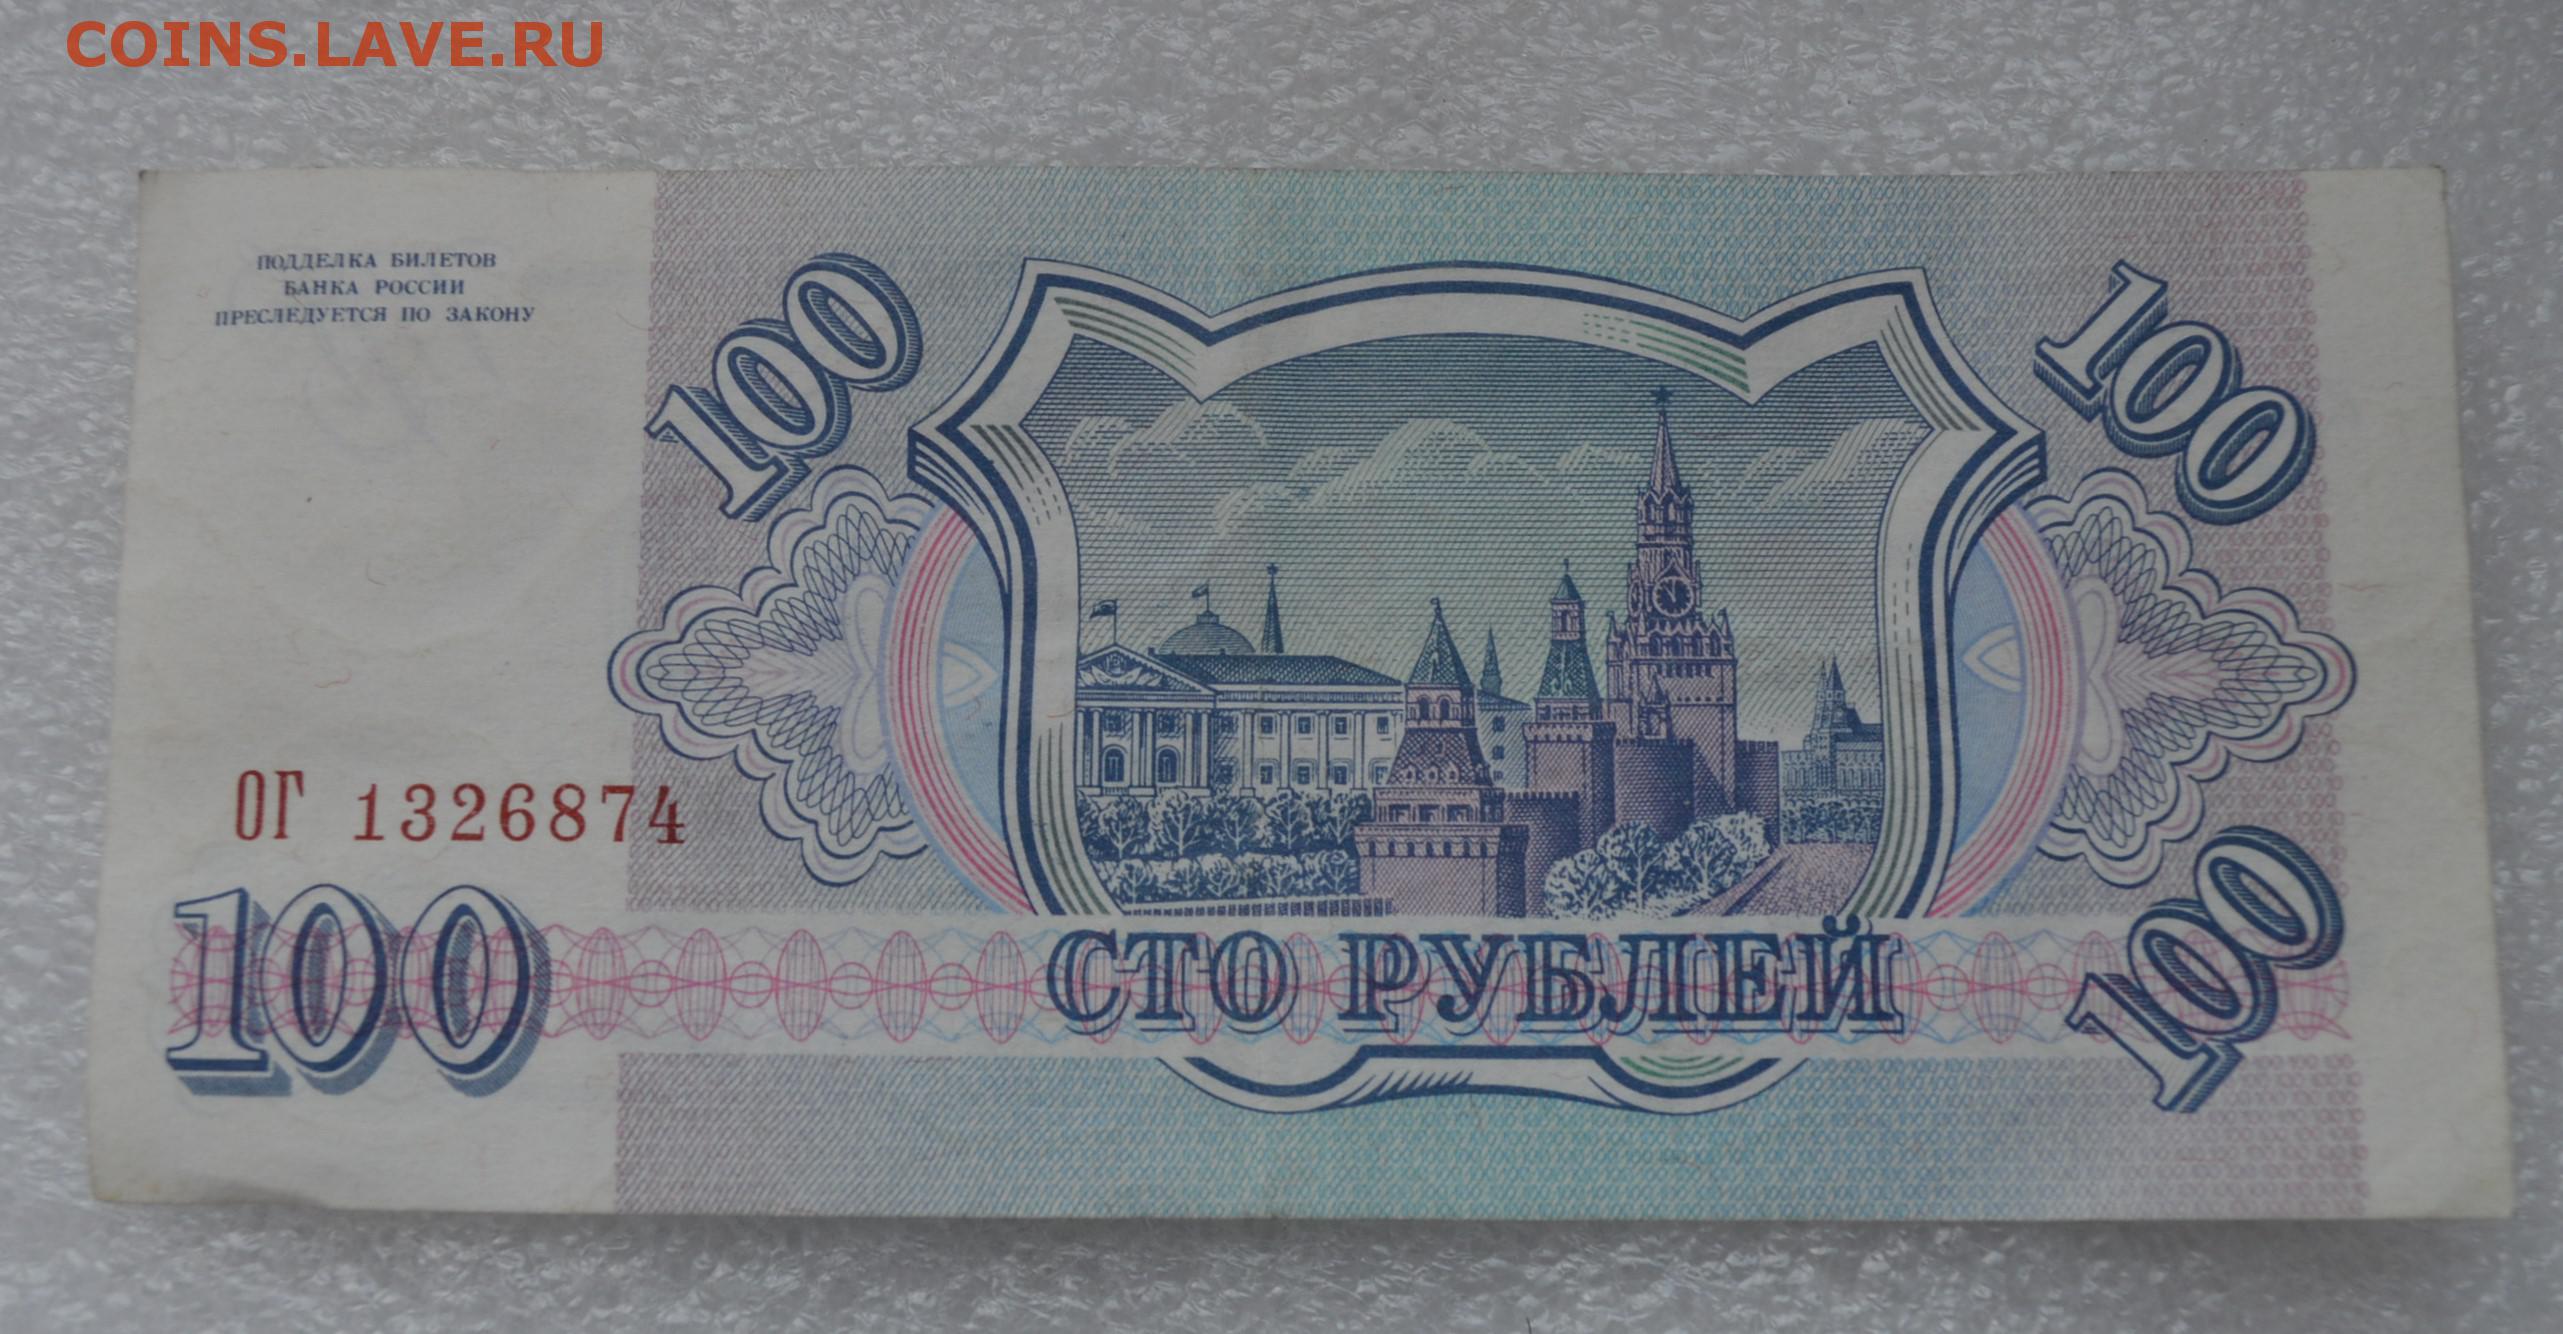 Двести девять рублей. 200 Рублей 1993 года. 100 И 200 рублей 1993. 200 Рублей 93 года. 200 Рублей 1993г.